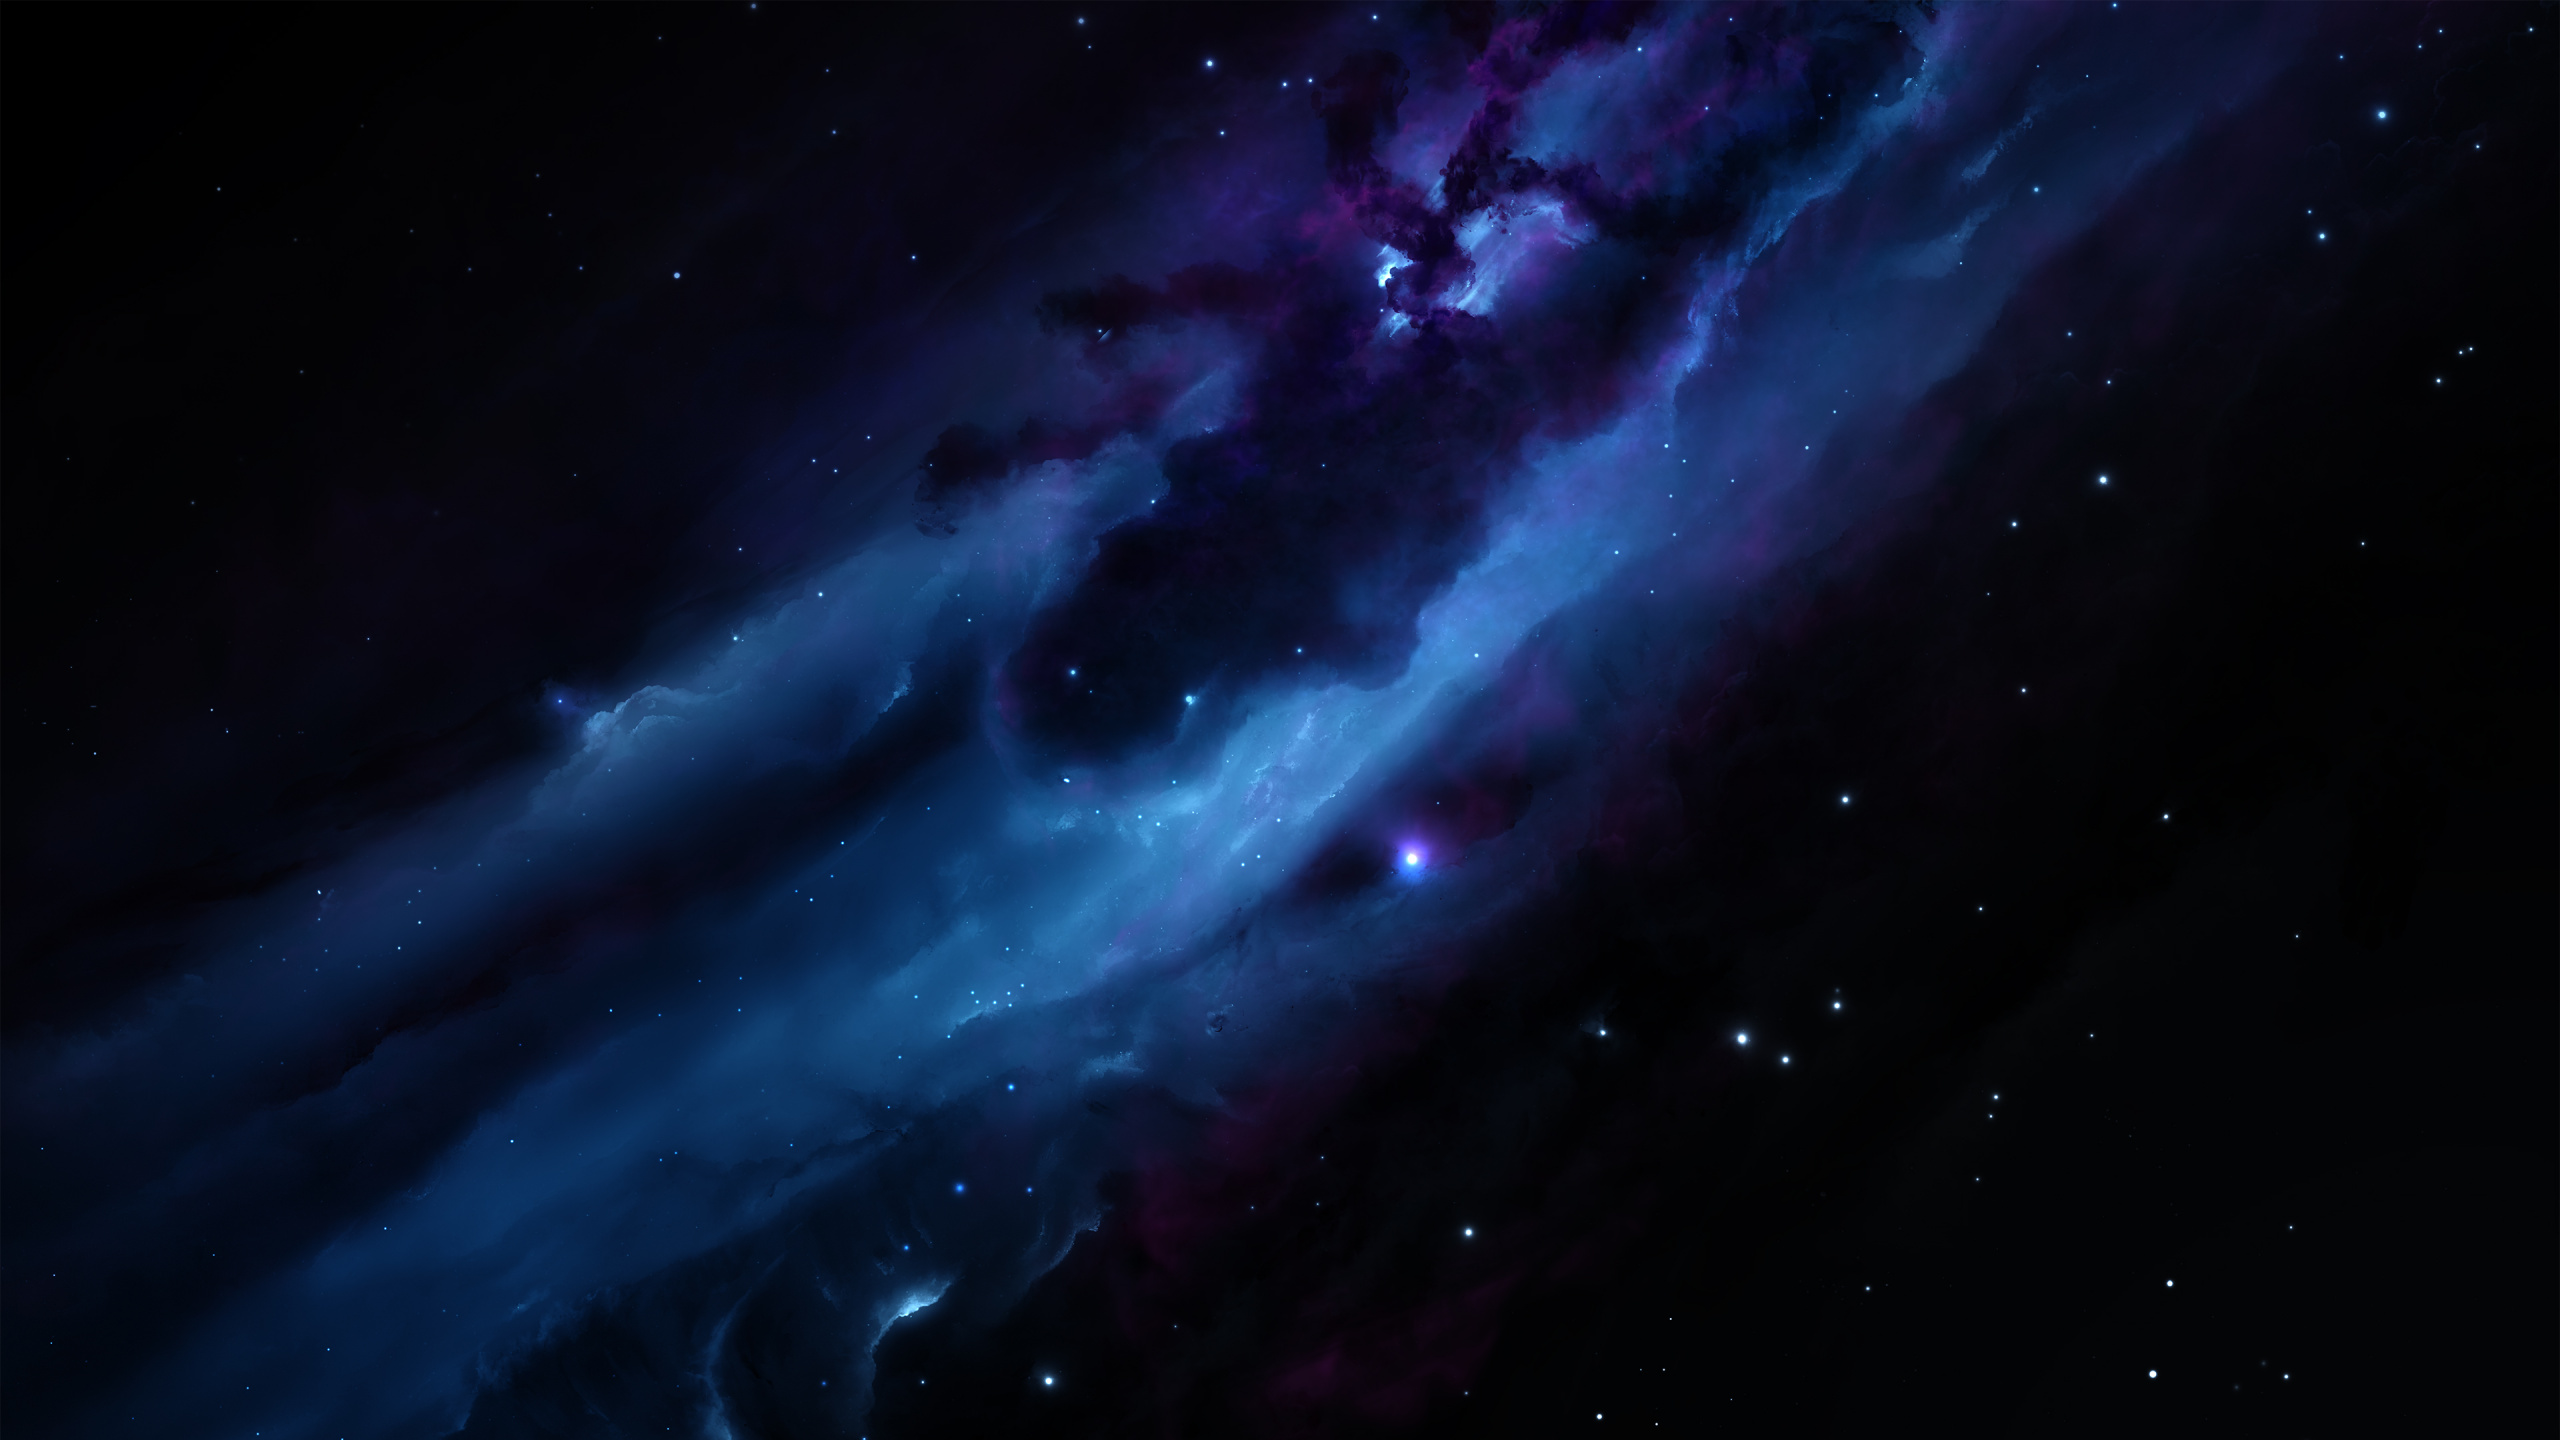 Lila Und Weiße Galaxie Illustration. Wallpaper in 2560x1440 Resolution